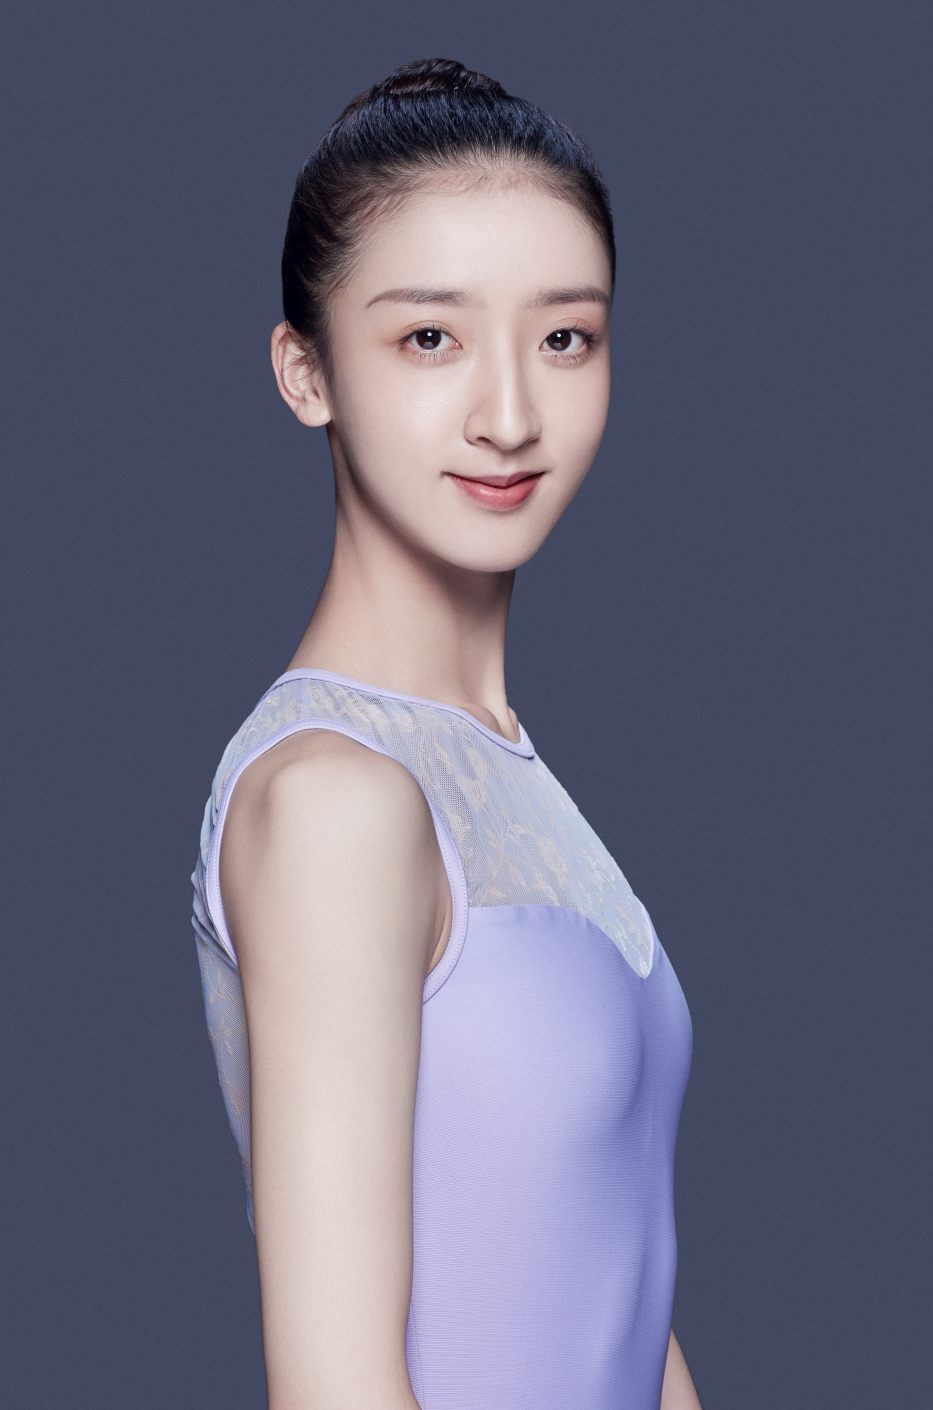 5. Q.Yunting, National Ballet of China © National Ballet of China